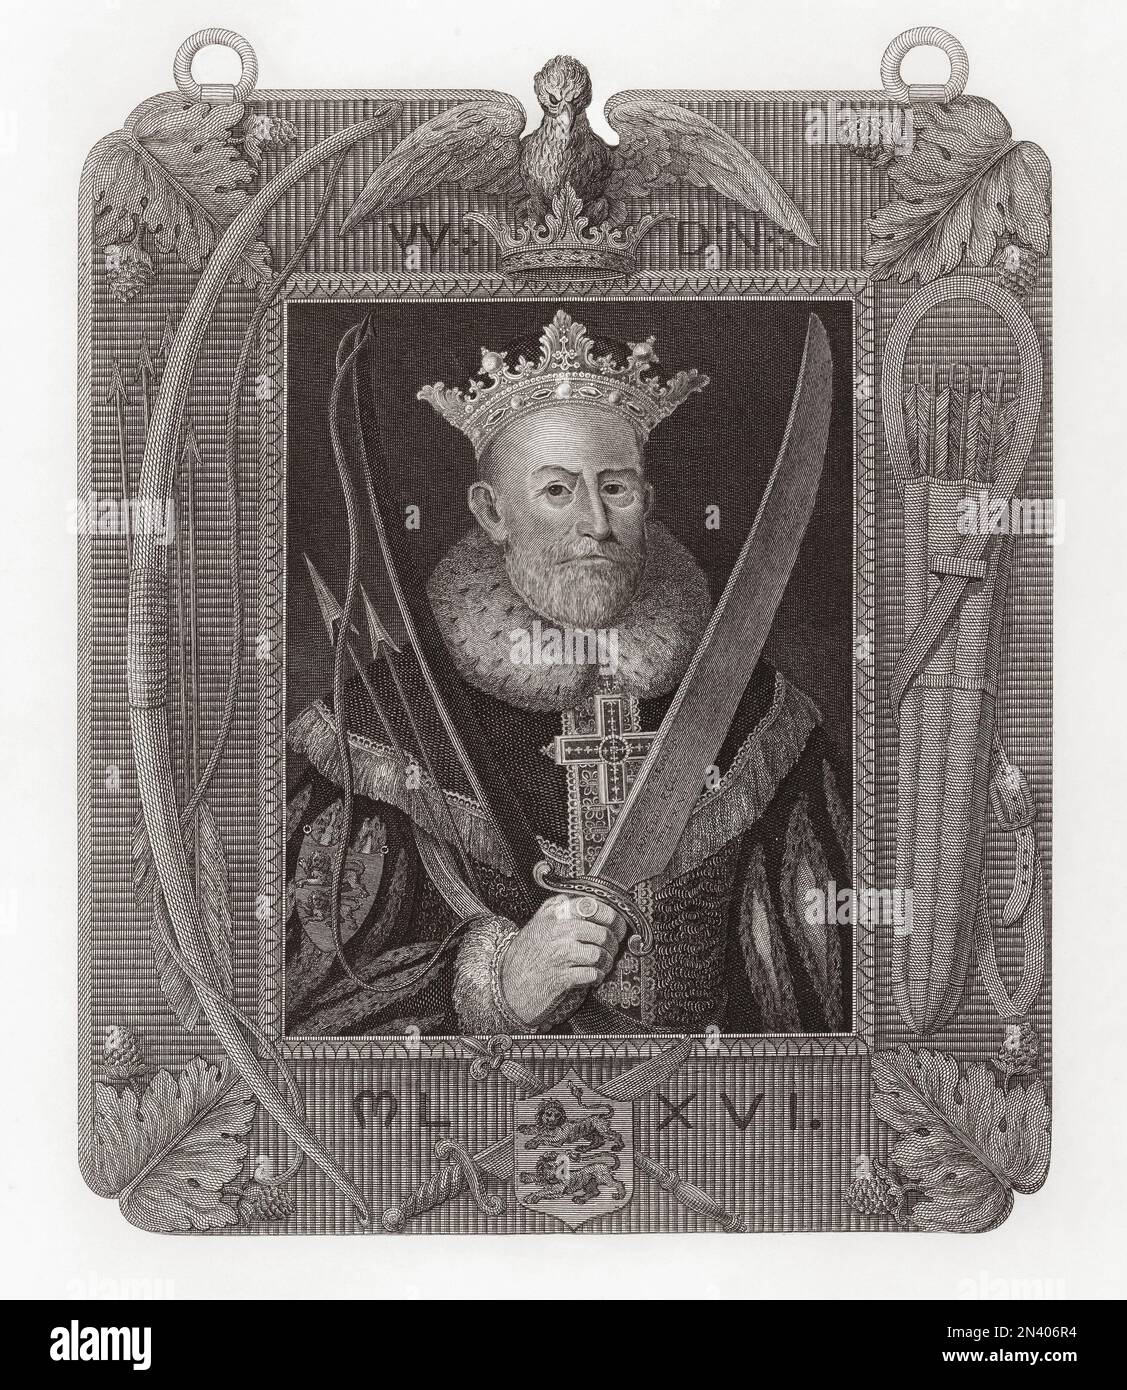 William I., auch bekannt als William der Eroberer und William der Bastard, ungefähr 1028 - 1087. Erster normannischer König von England. Nach einem Aufdruck, der ursprünglich in der historischen Galerie von Robert Bowyer gezeigt wurde und zwischen 1793 und 1806 veröffentlicht wurde. Stockfoto